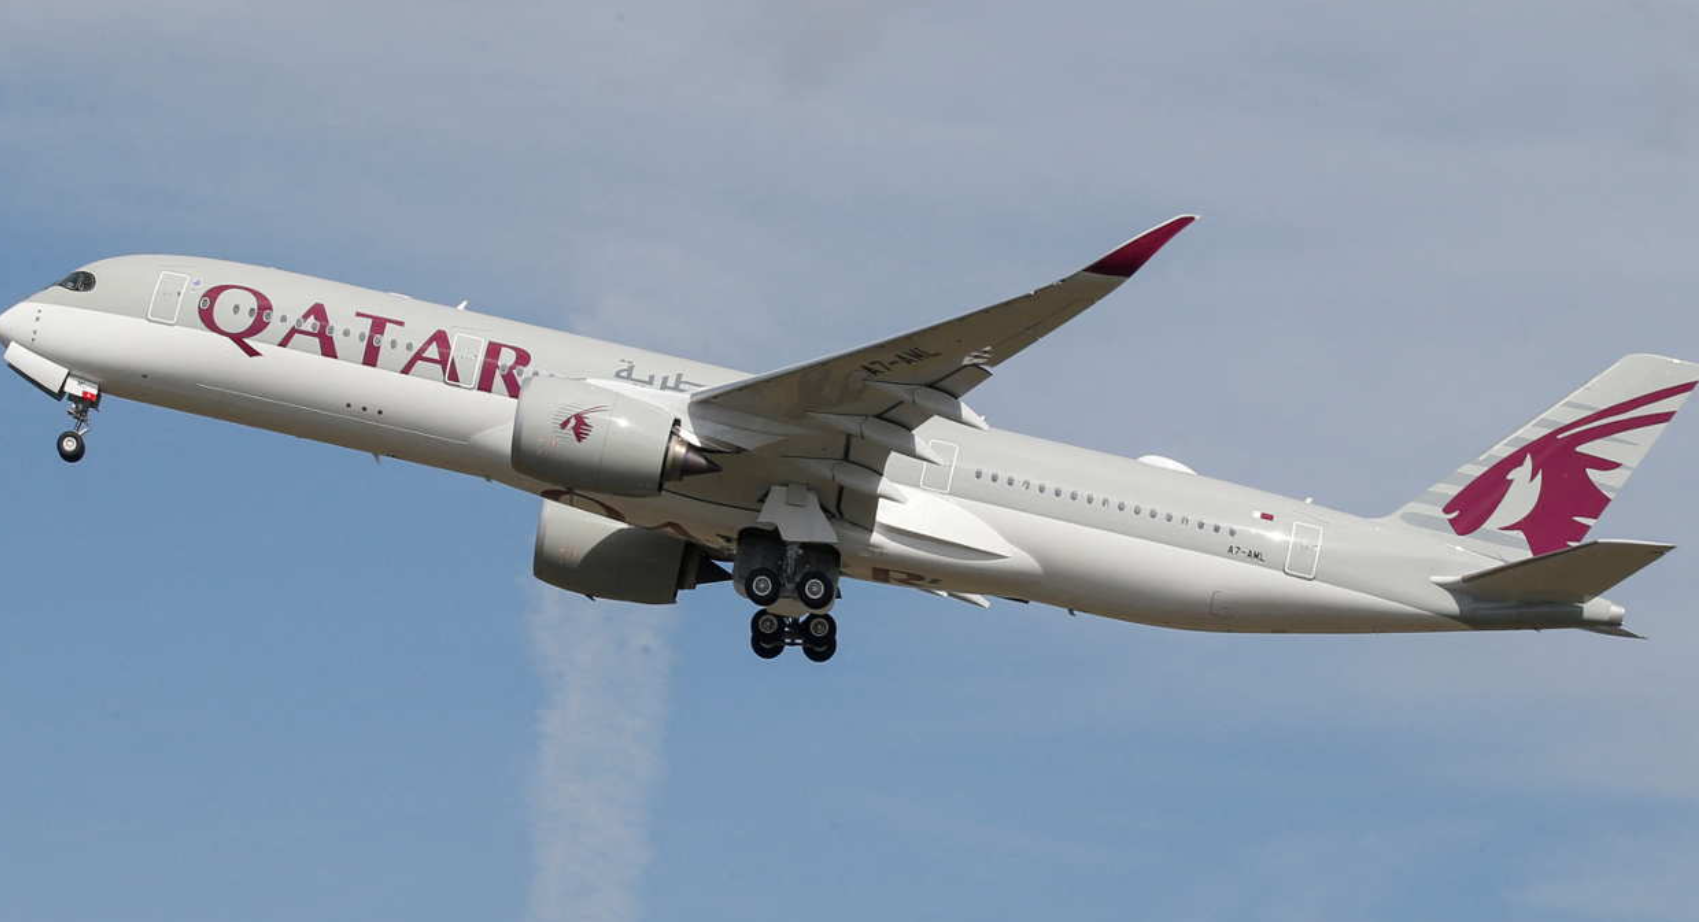 Katar Havayolları’nın Doha-Dublin seferini yapan uçağı, Türkiye üzerinde türbülansa girdi:12 yaralı